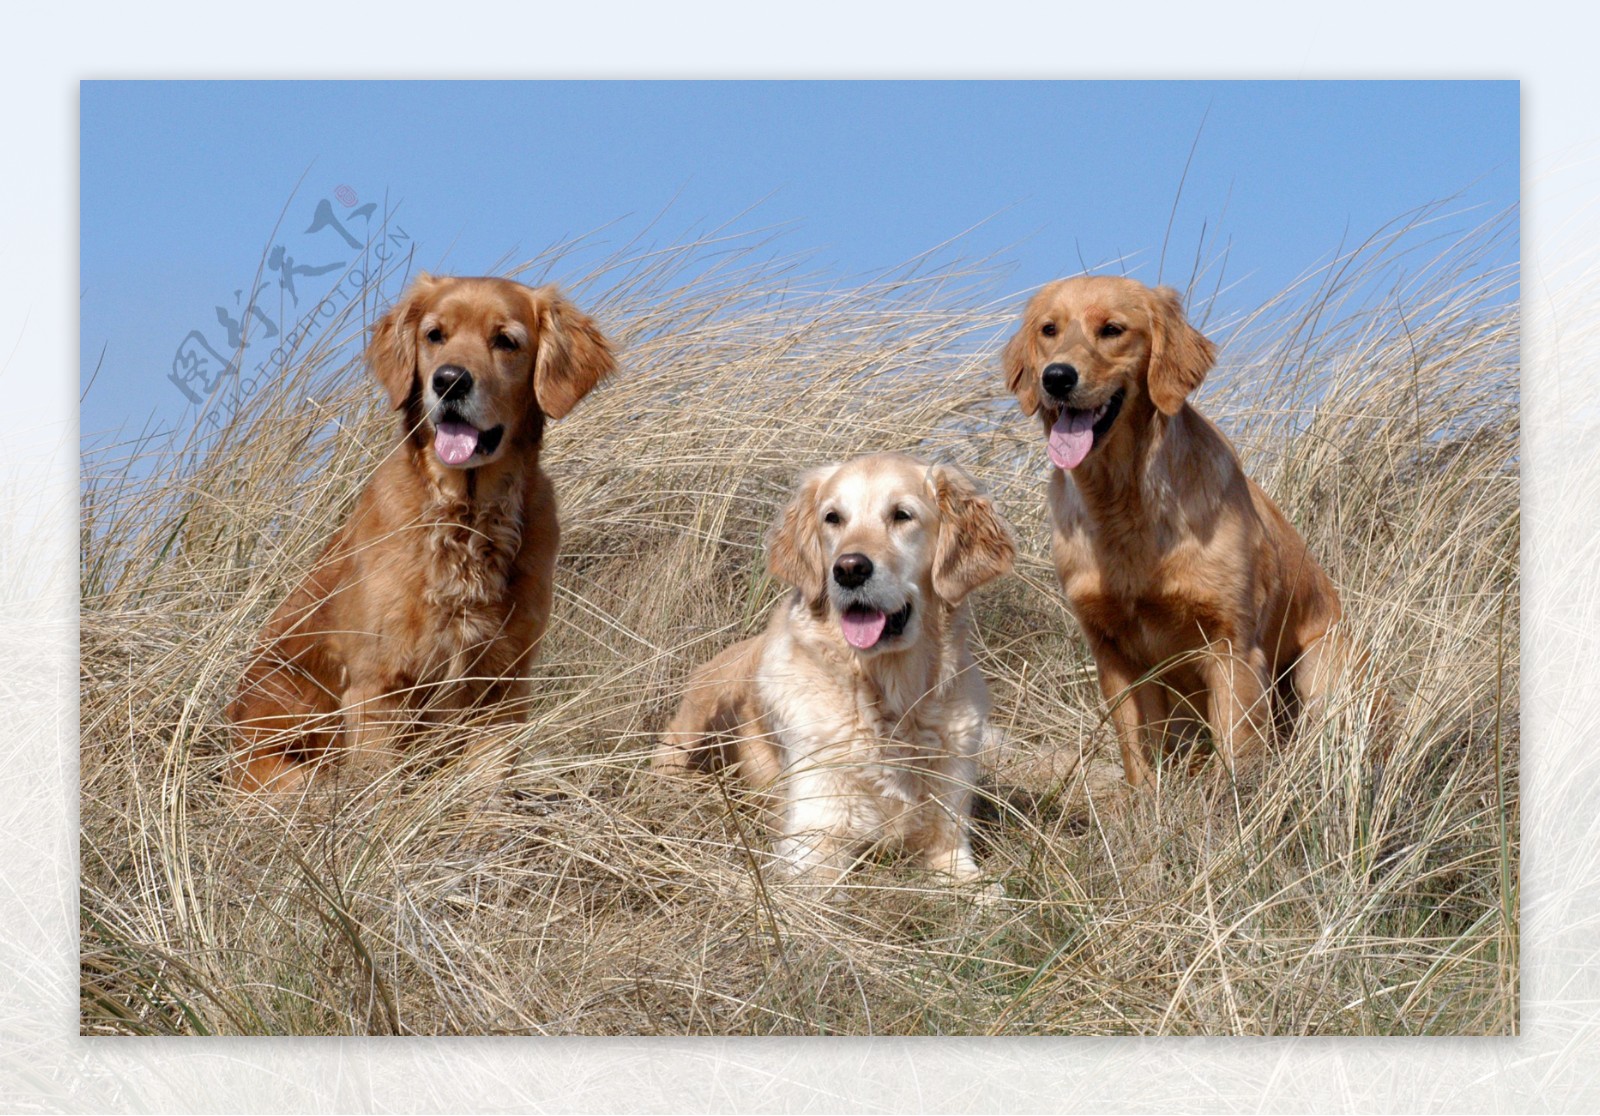 三只狗狗可爱卖萌表情动物壁纸-动物壁纸-壁纸下载-美桌网